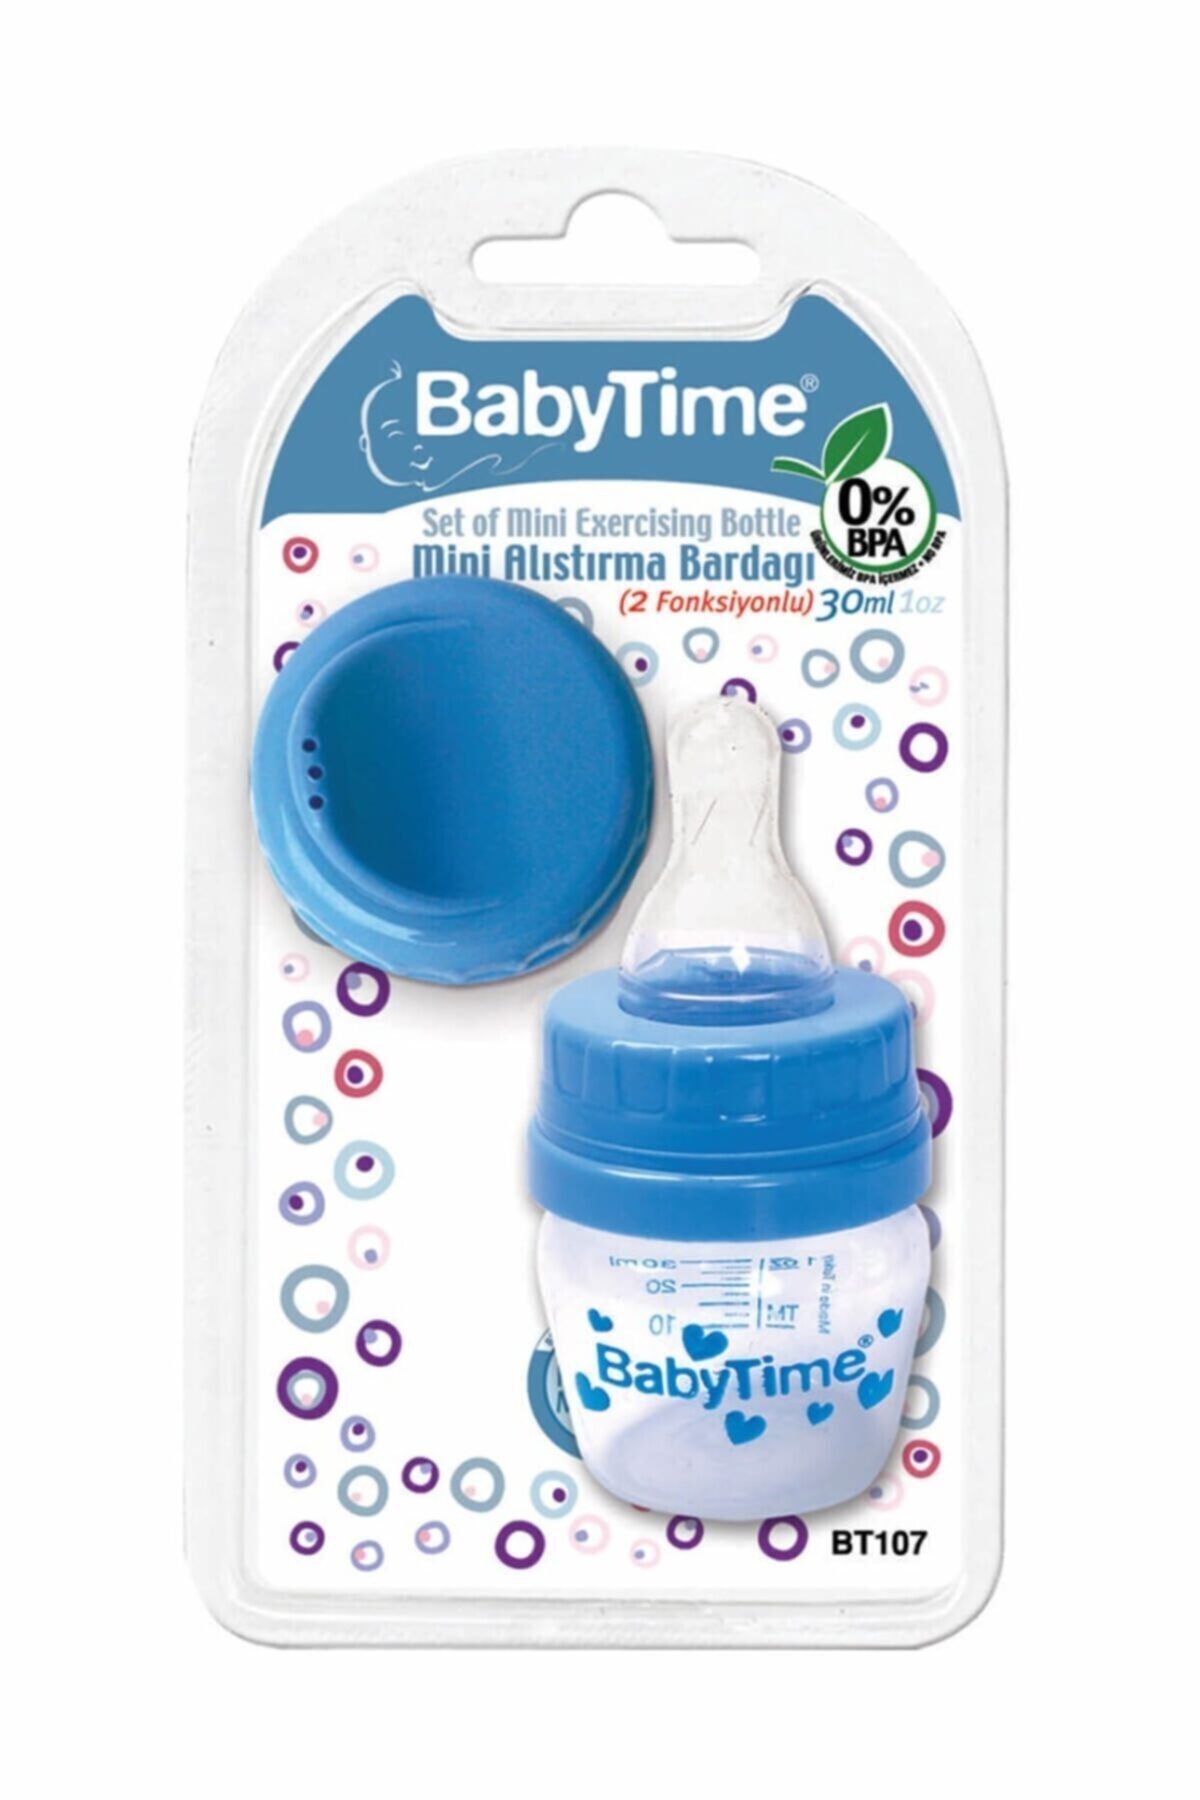 Babytime Mavi 2 Fonksiyonlu Mini Alıştırma Bardağı